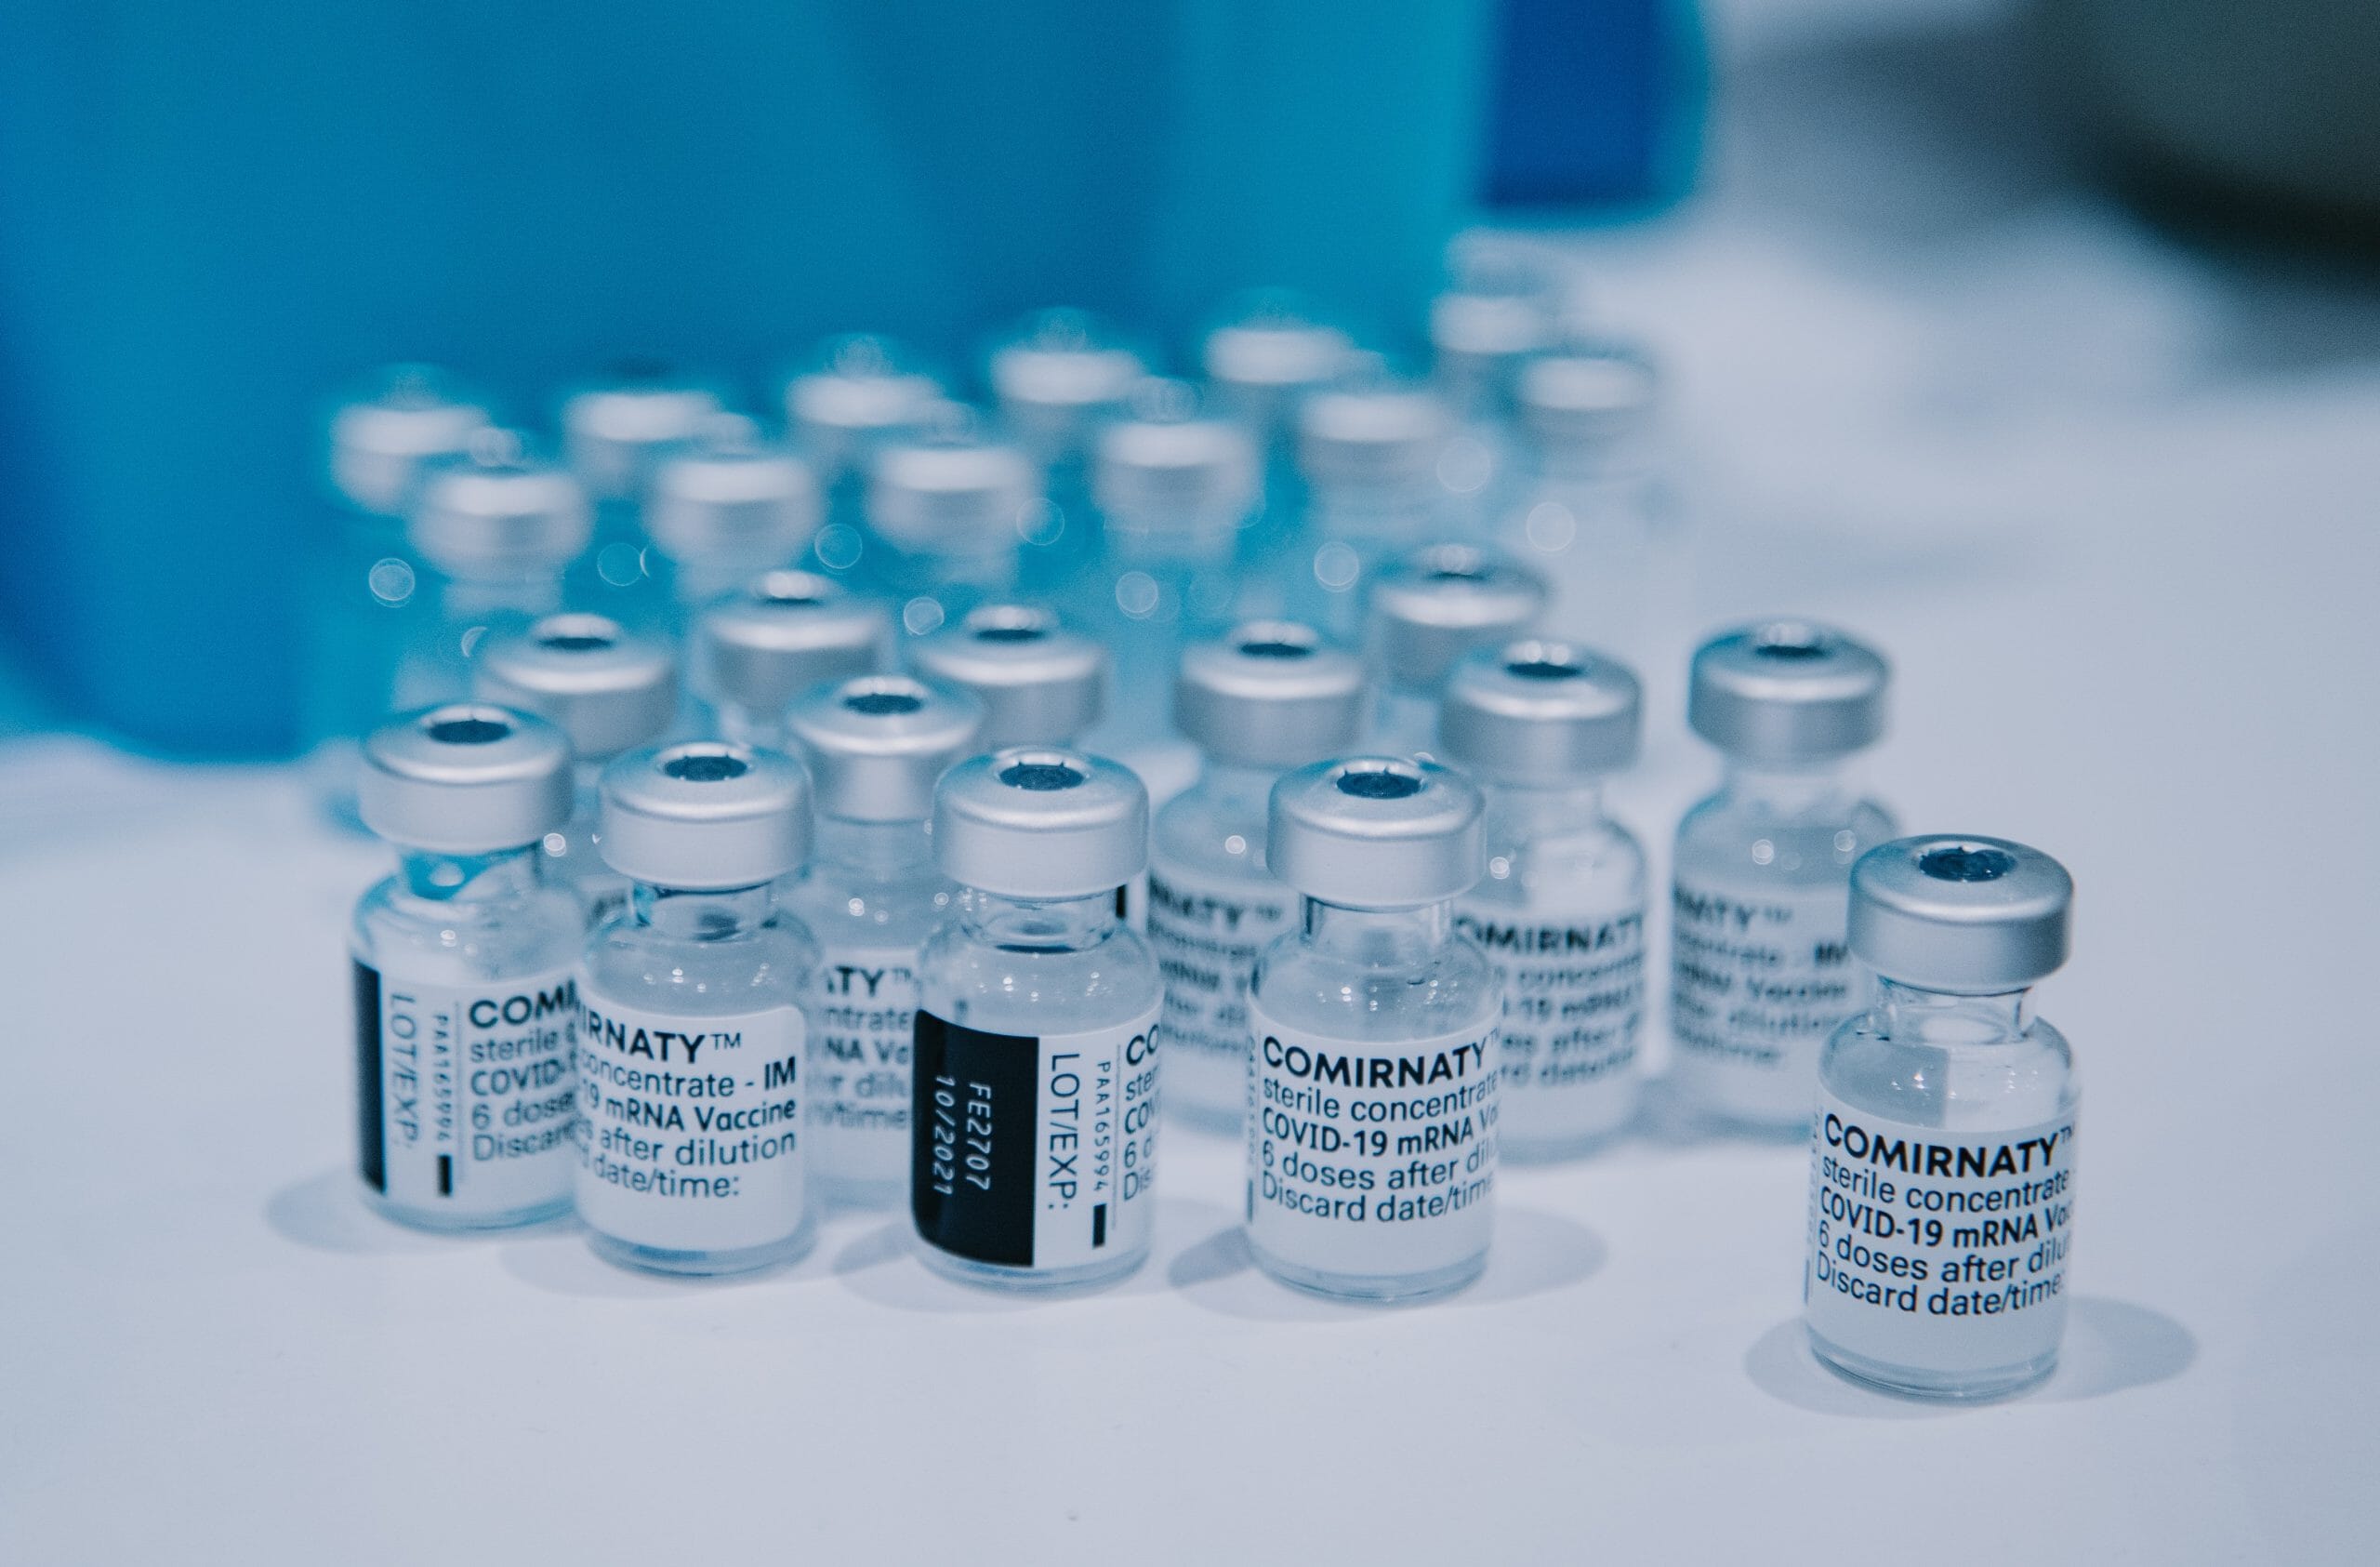 Coronavirus-Impfstoffe auf einem Tisch neben einem blauen Behälter in einem Startup-Büro.